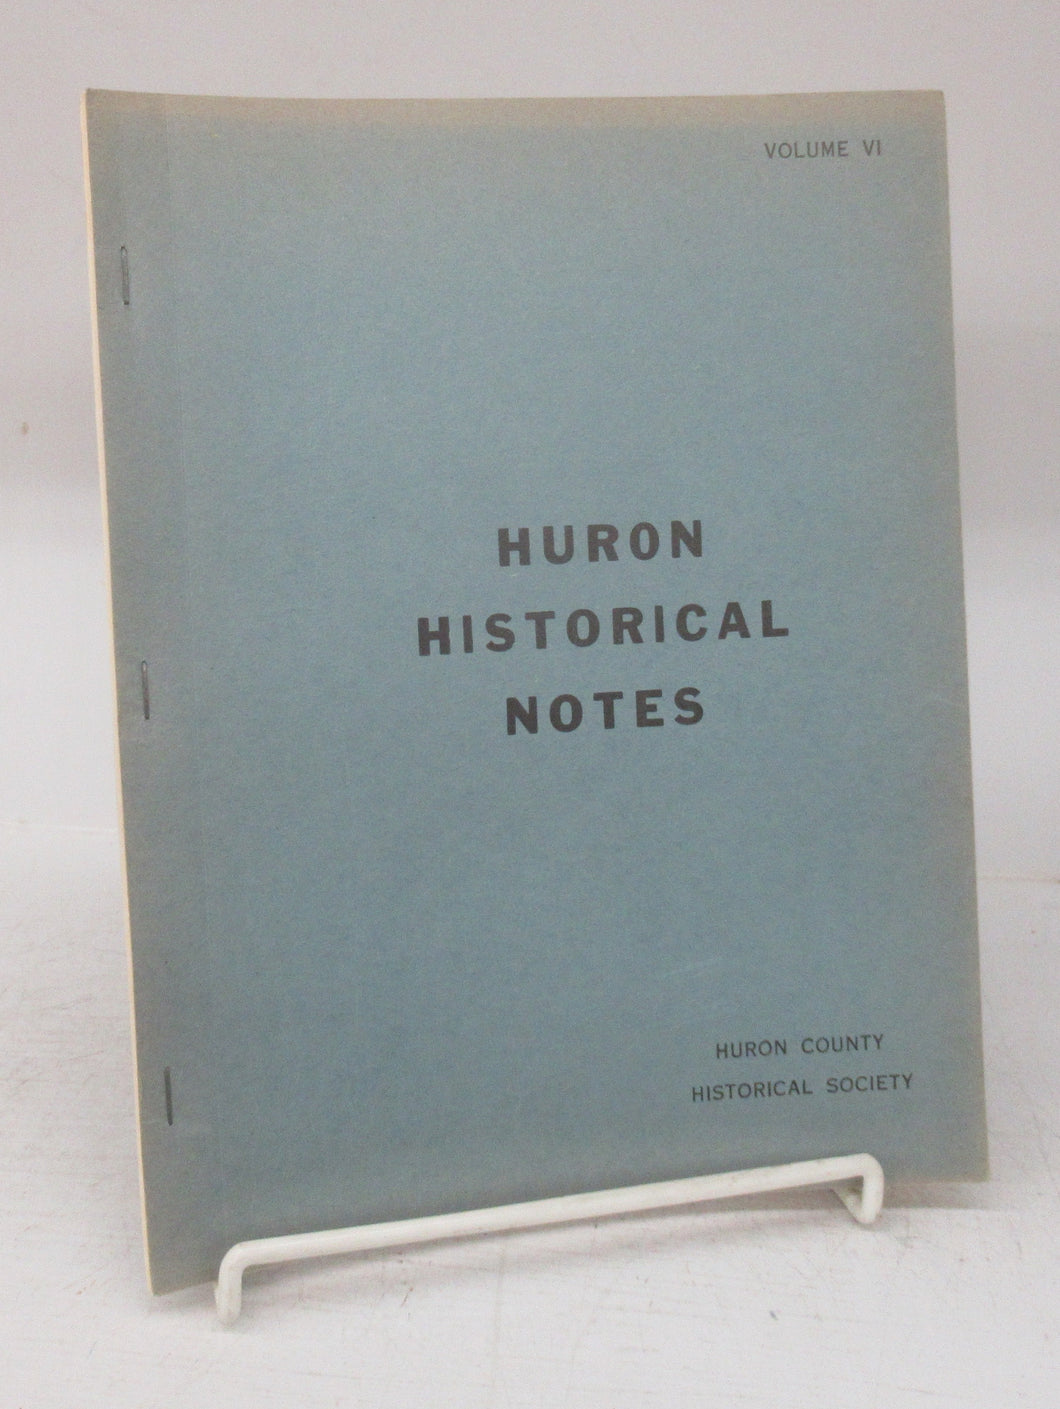 Huron Historical Notes, Volume VI